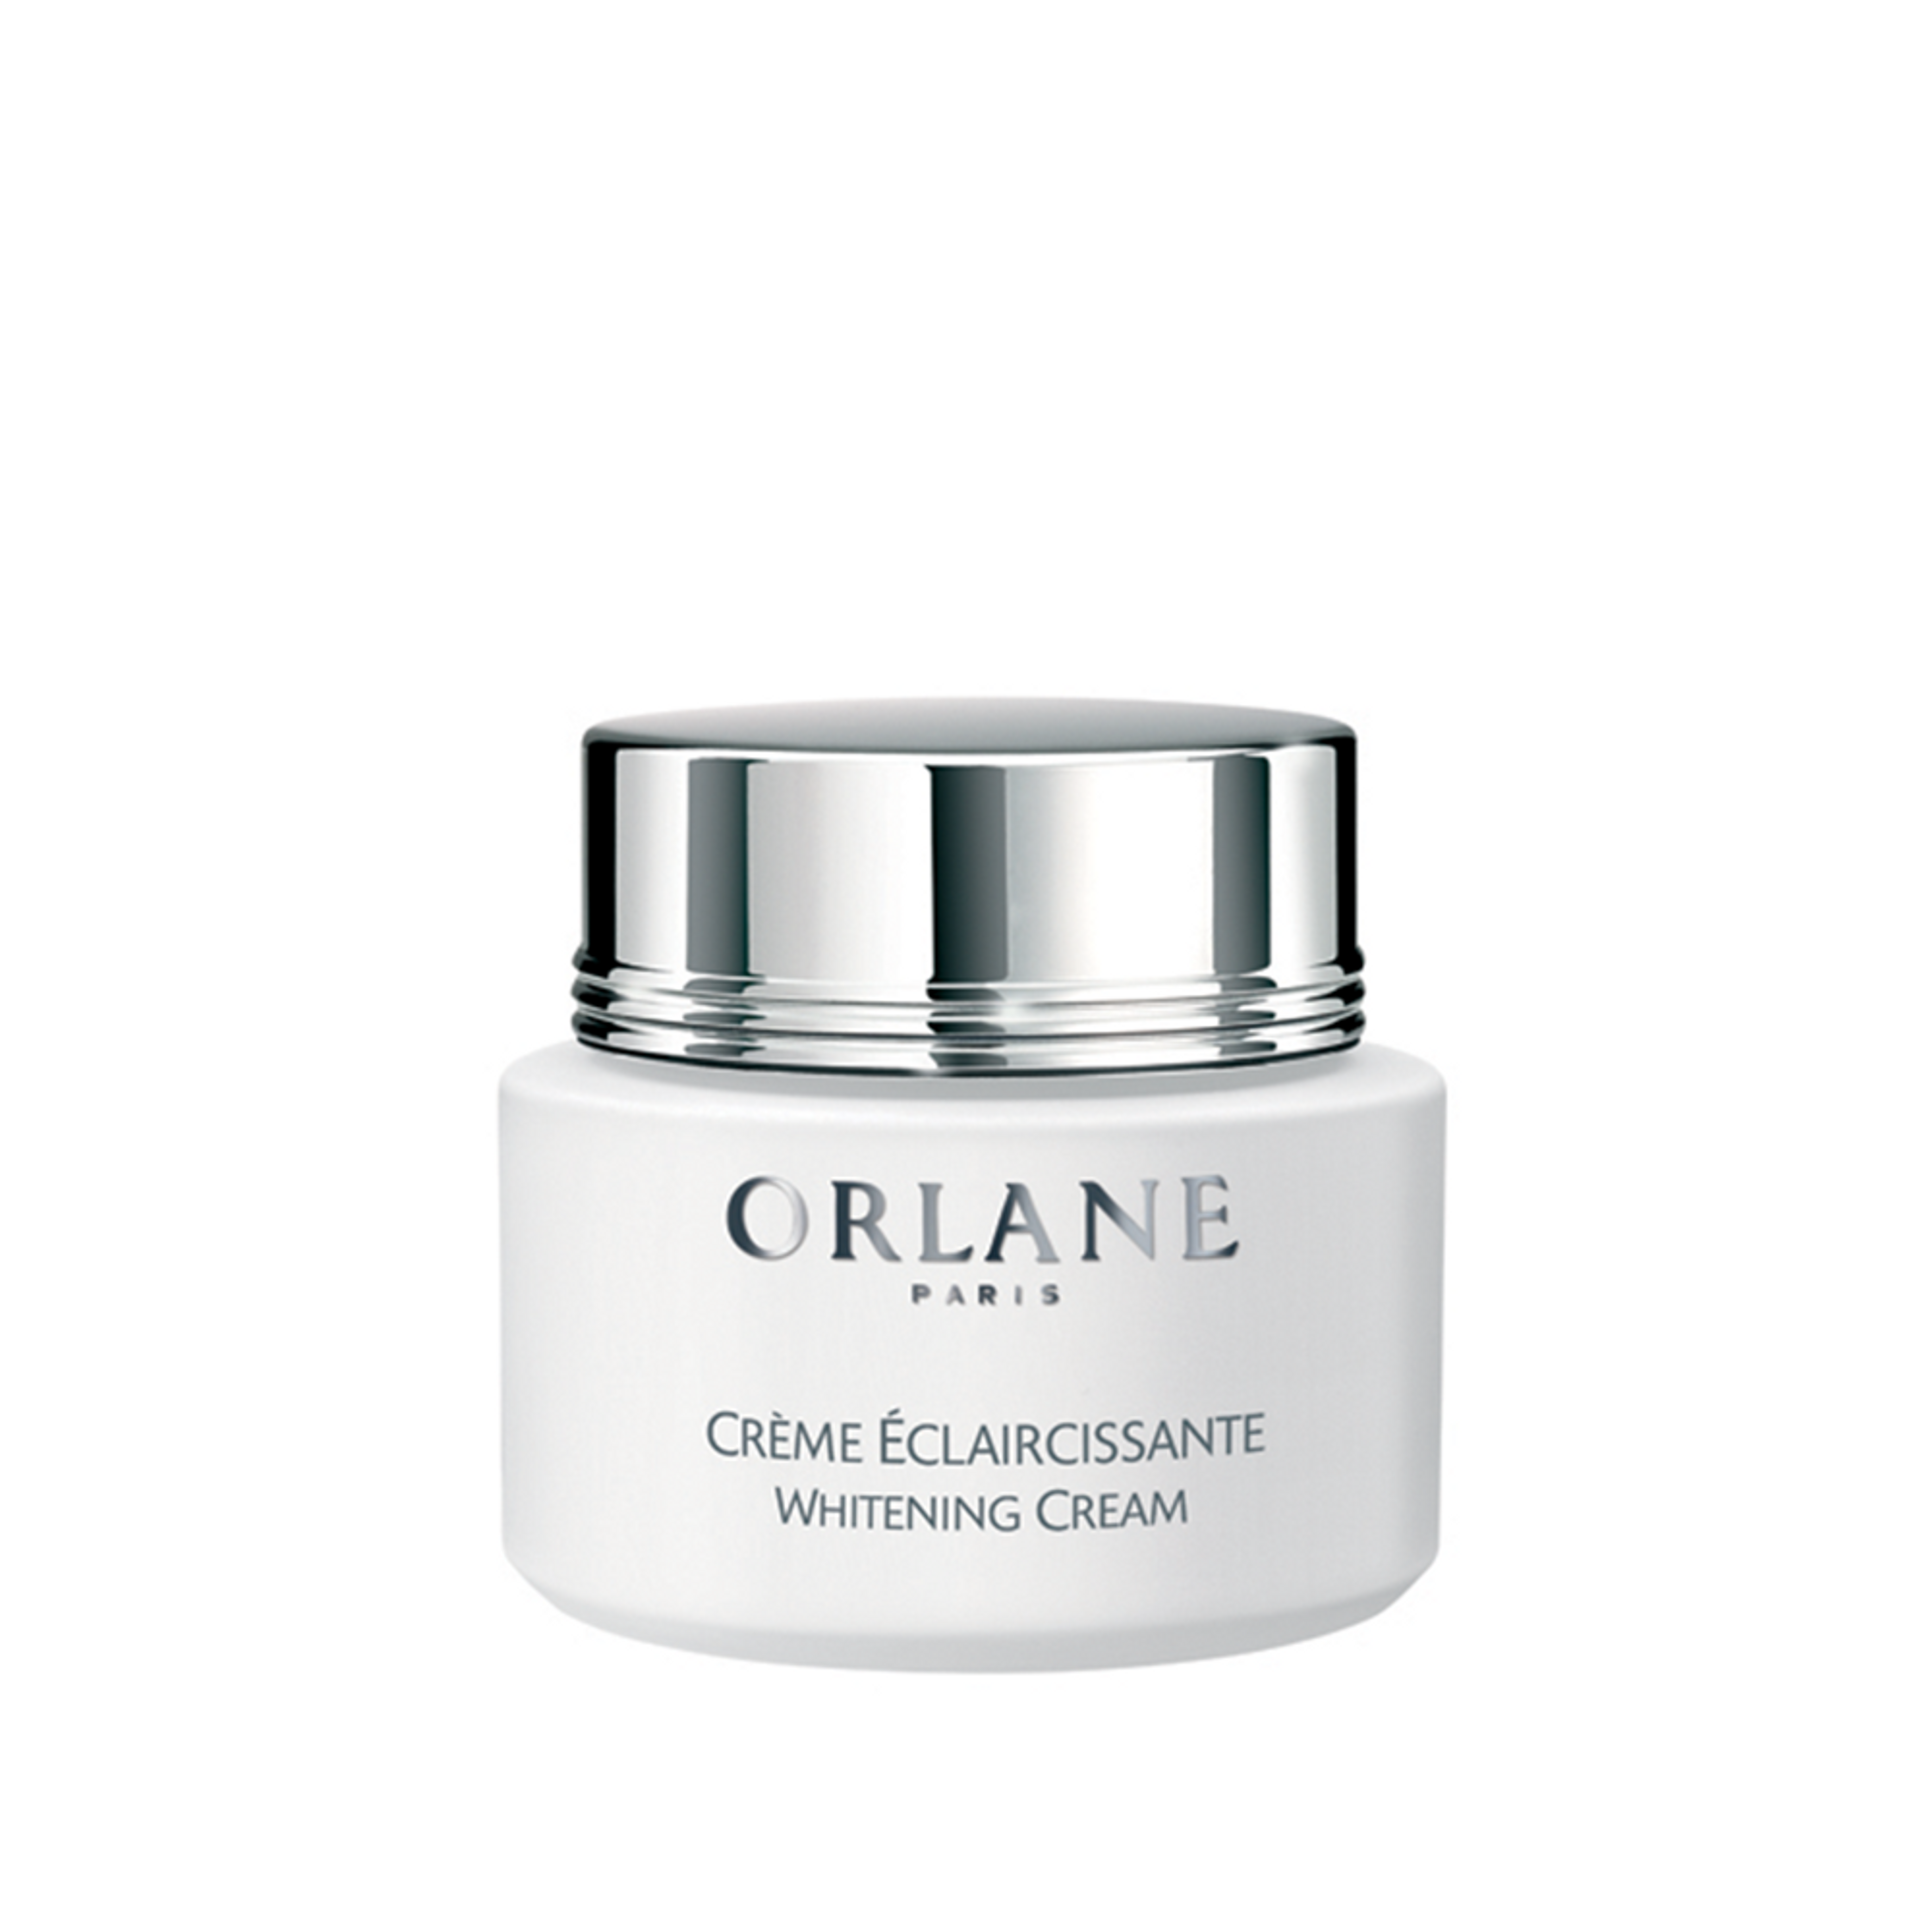 Orlane Creme Eclaircissante 1